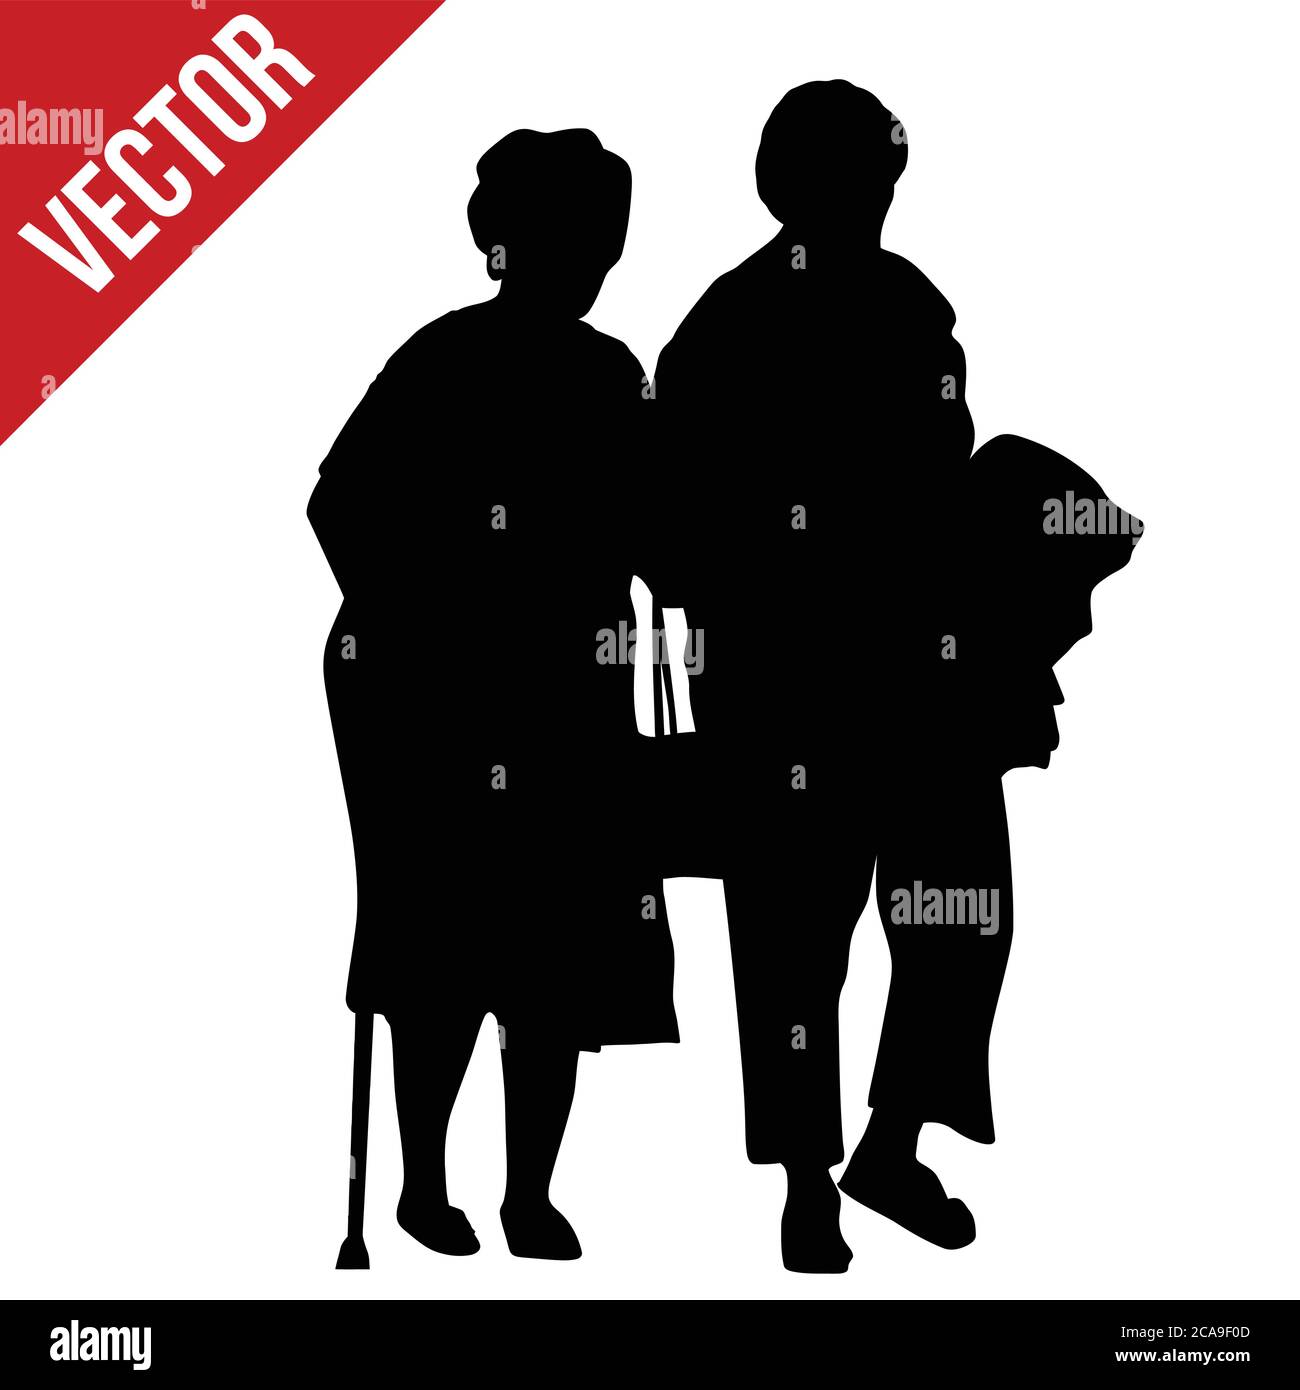 Senior couple silhouette on white background, vector illustration Stock Vector